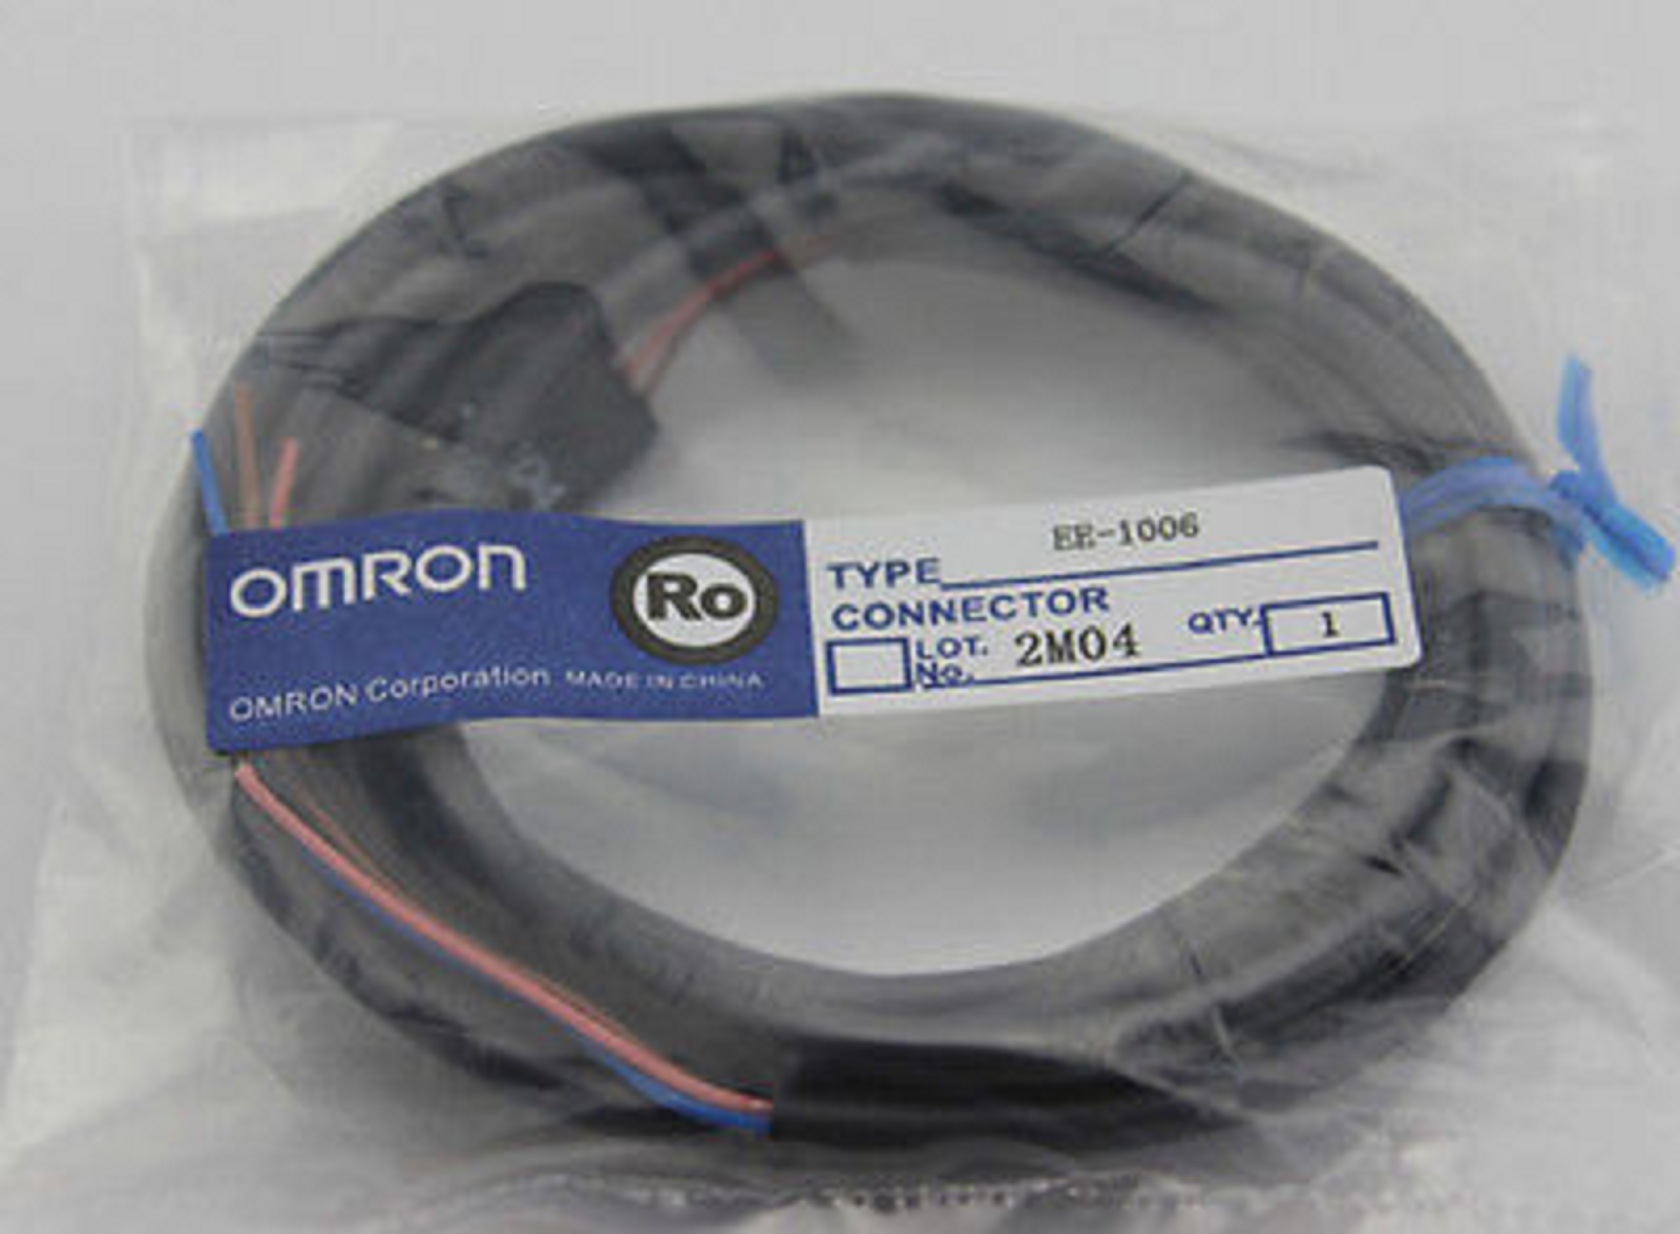 Omron EE-1006